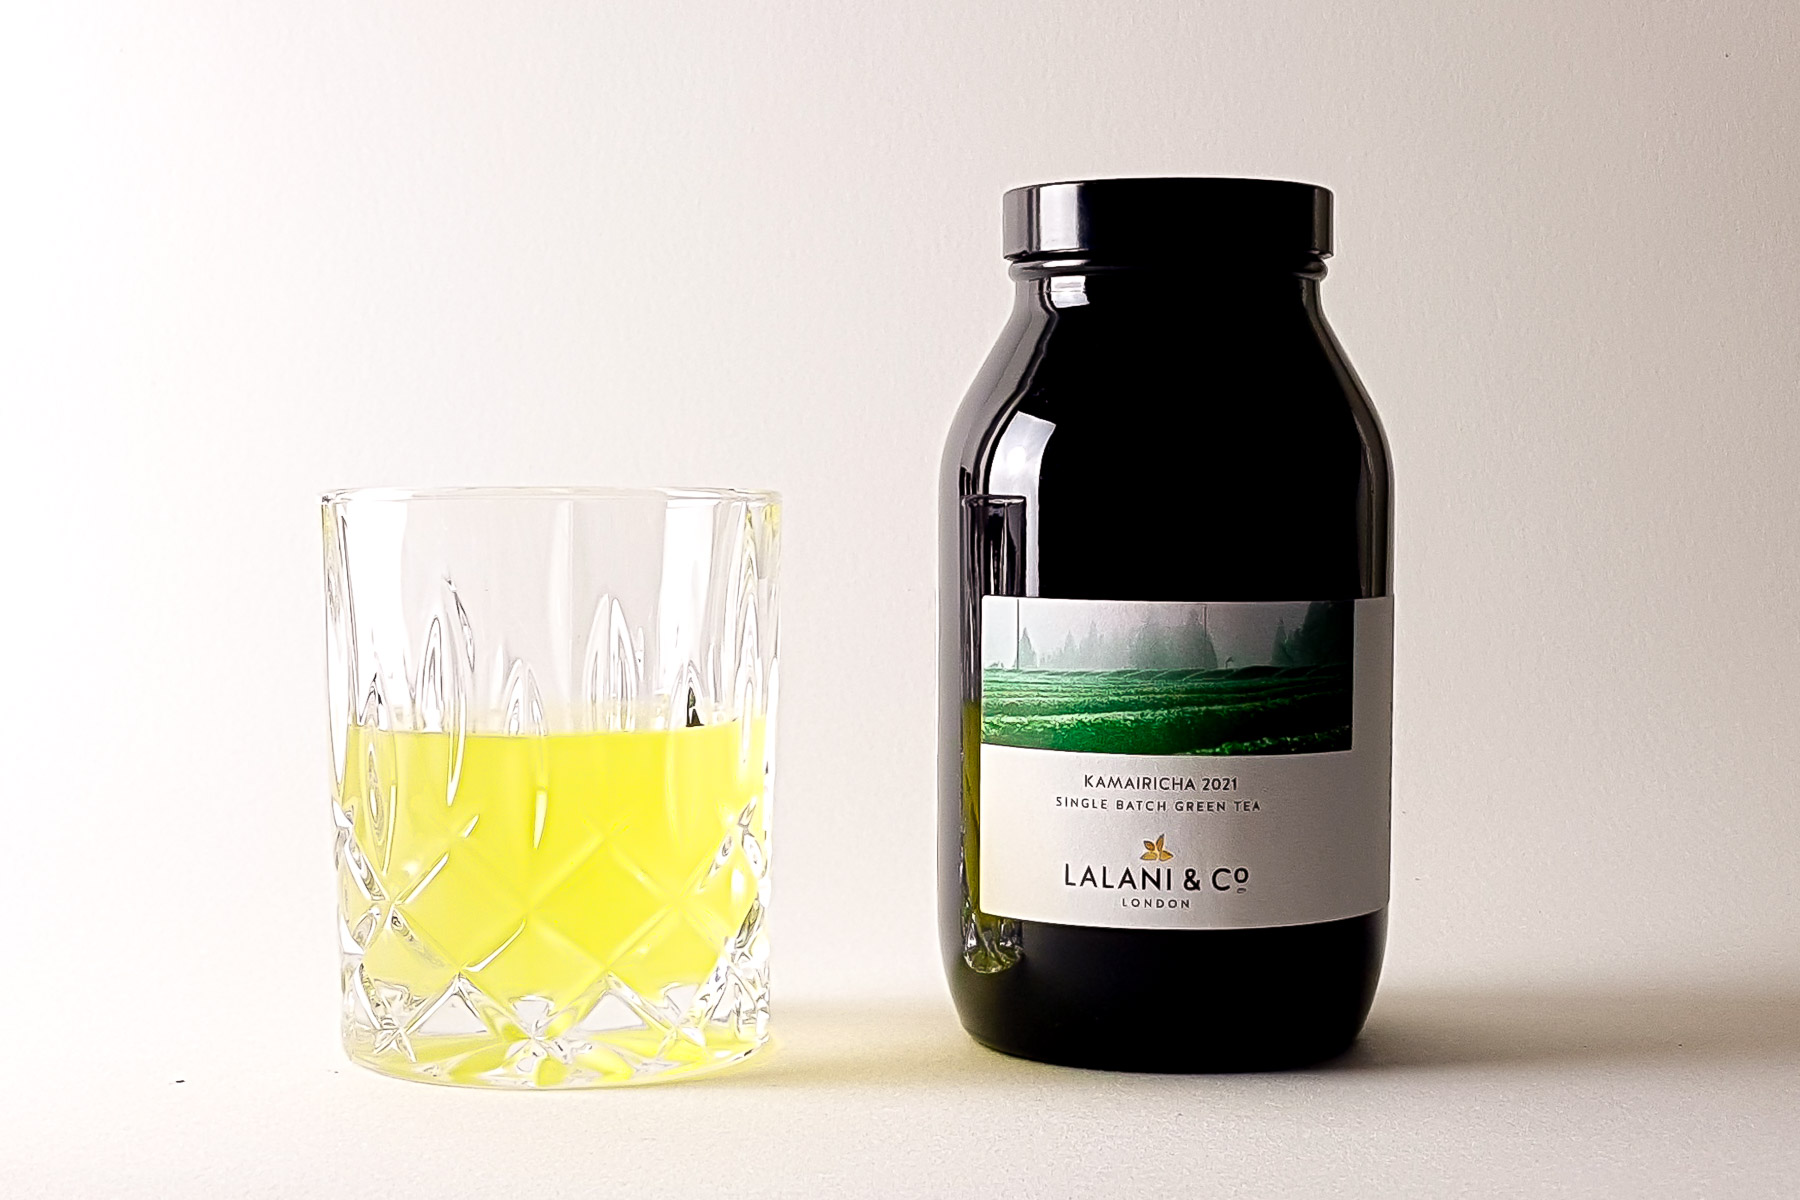 Lalani & Co: Kamairicha 2021 Organic Japanese Green Tea